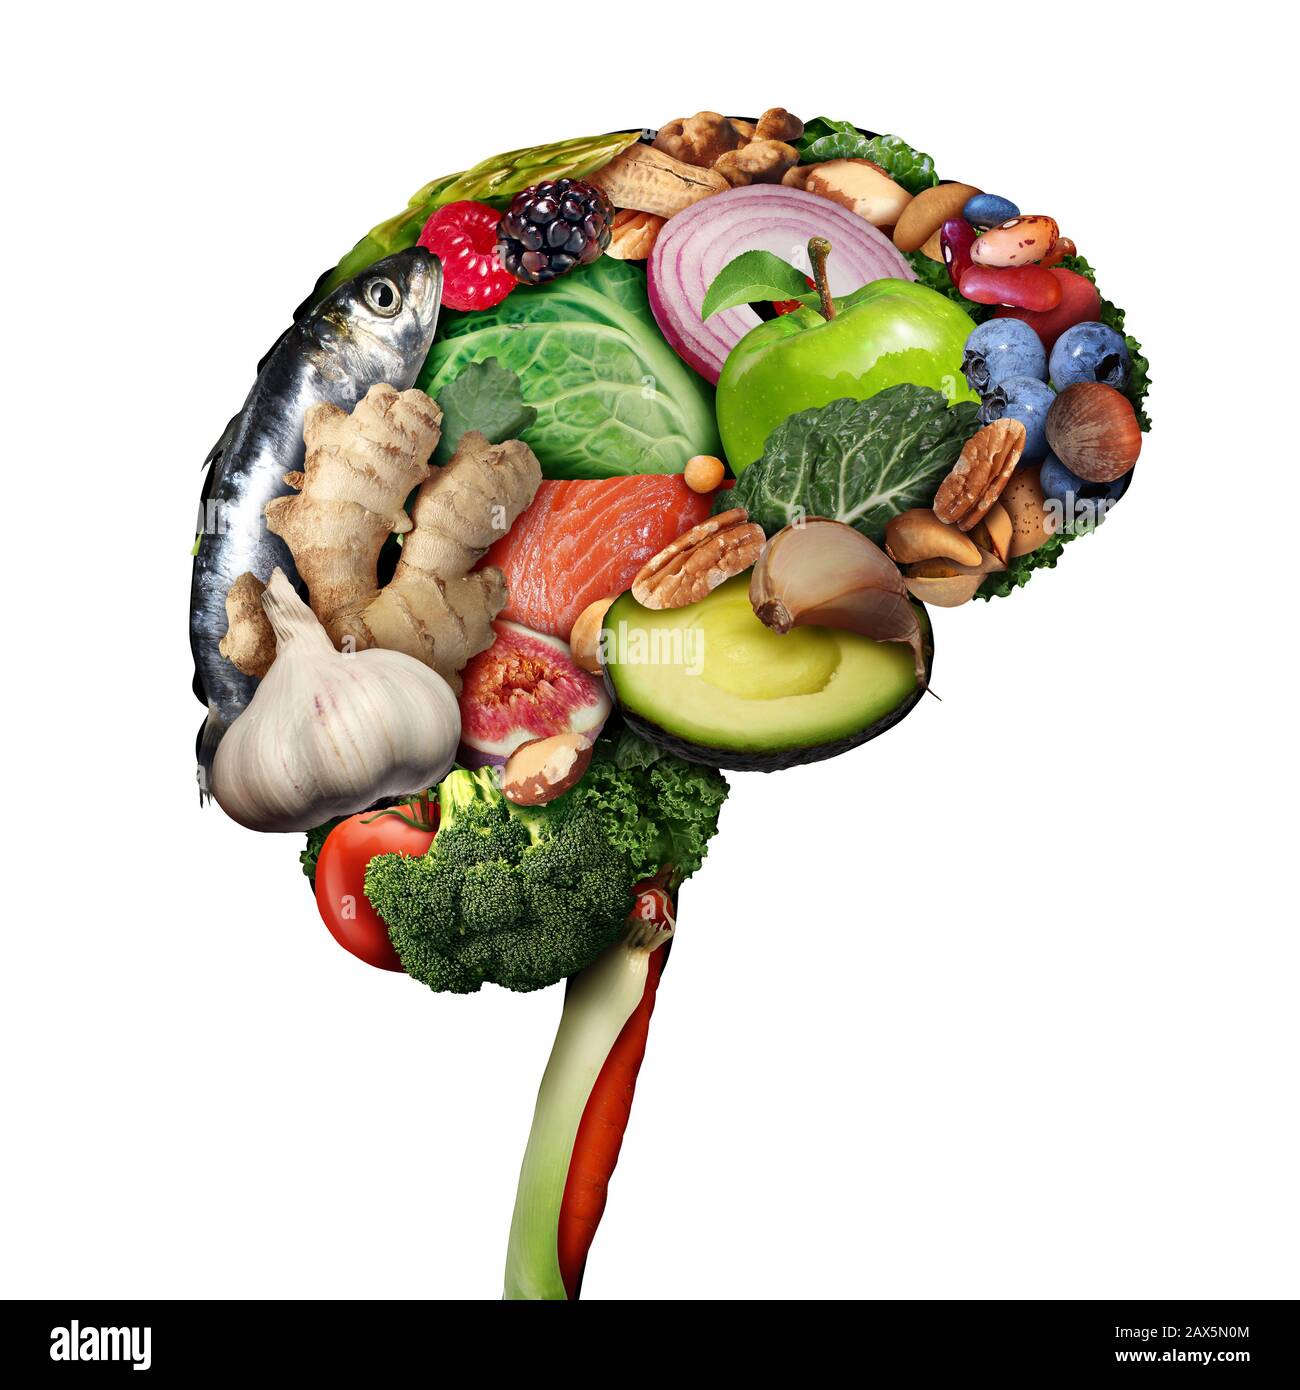 Alimentation saine du cerveau pour stimuler le concept de nutrition brainPower en tant que groupe de fruits à coque nutritifs poissons légumes et baies riches en acides gras oméga-3. Banque D'Images